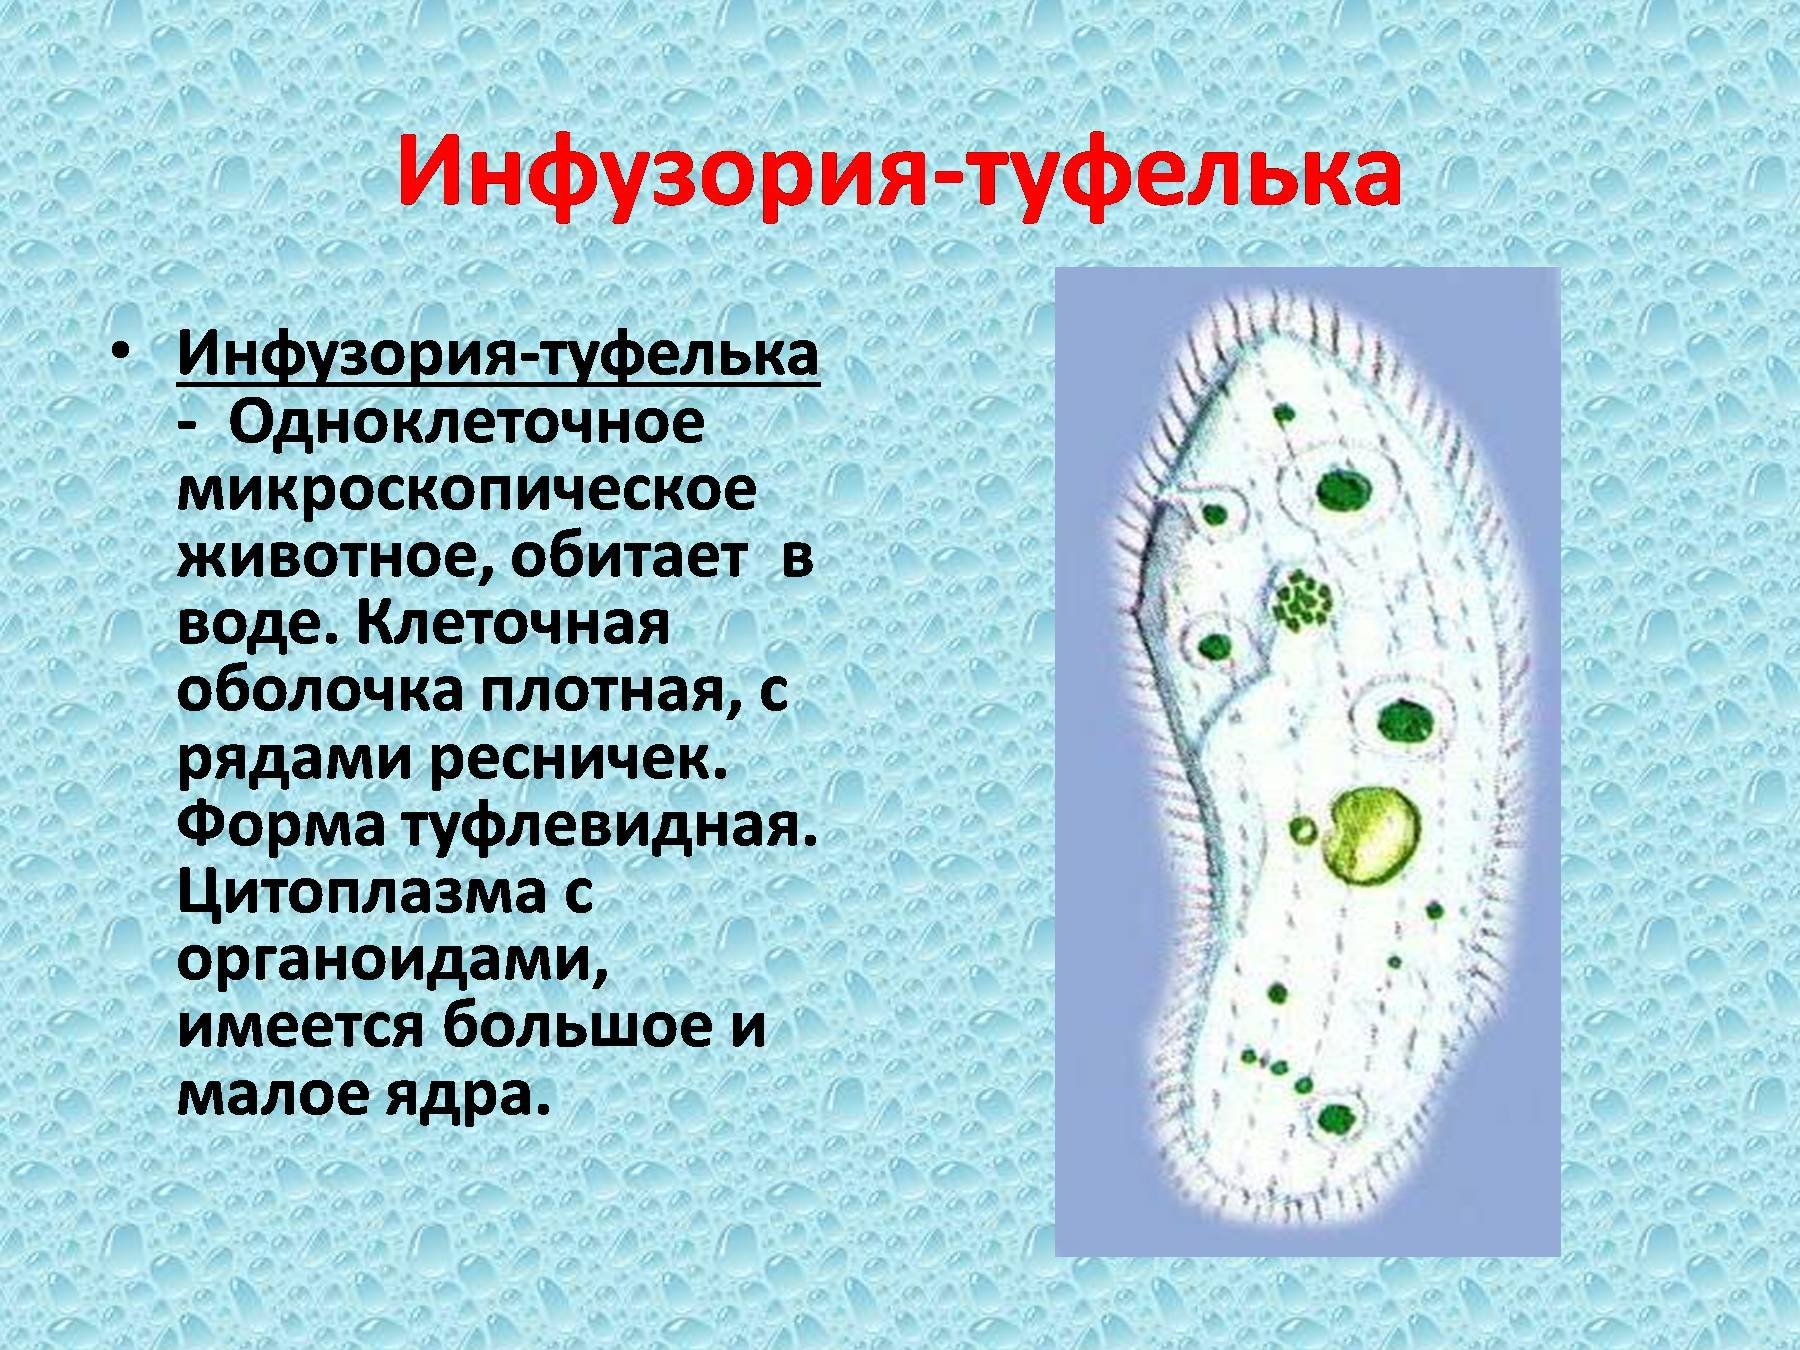 Какое ядро инфузории туфельки. Микронуклеус инфузории туфельки. Микронуклеус у инфузорий. Инфузория туфелька цитоплазма. Инфузория туфелька форма тела 7 класс.